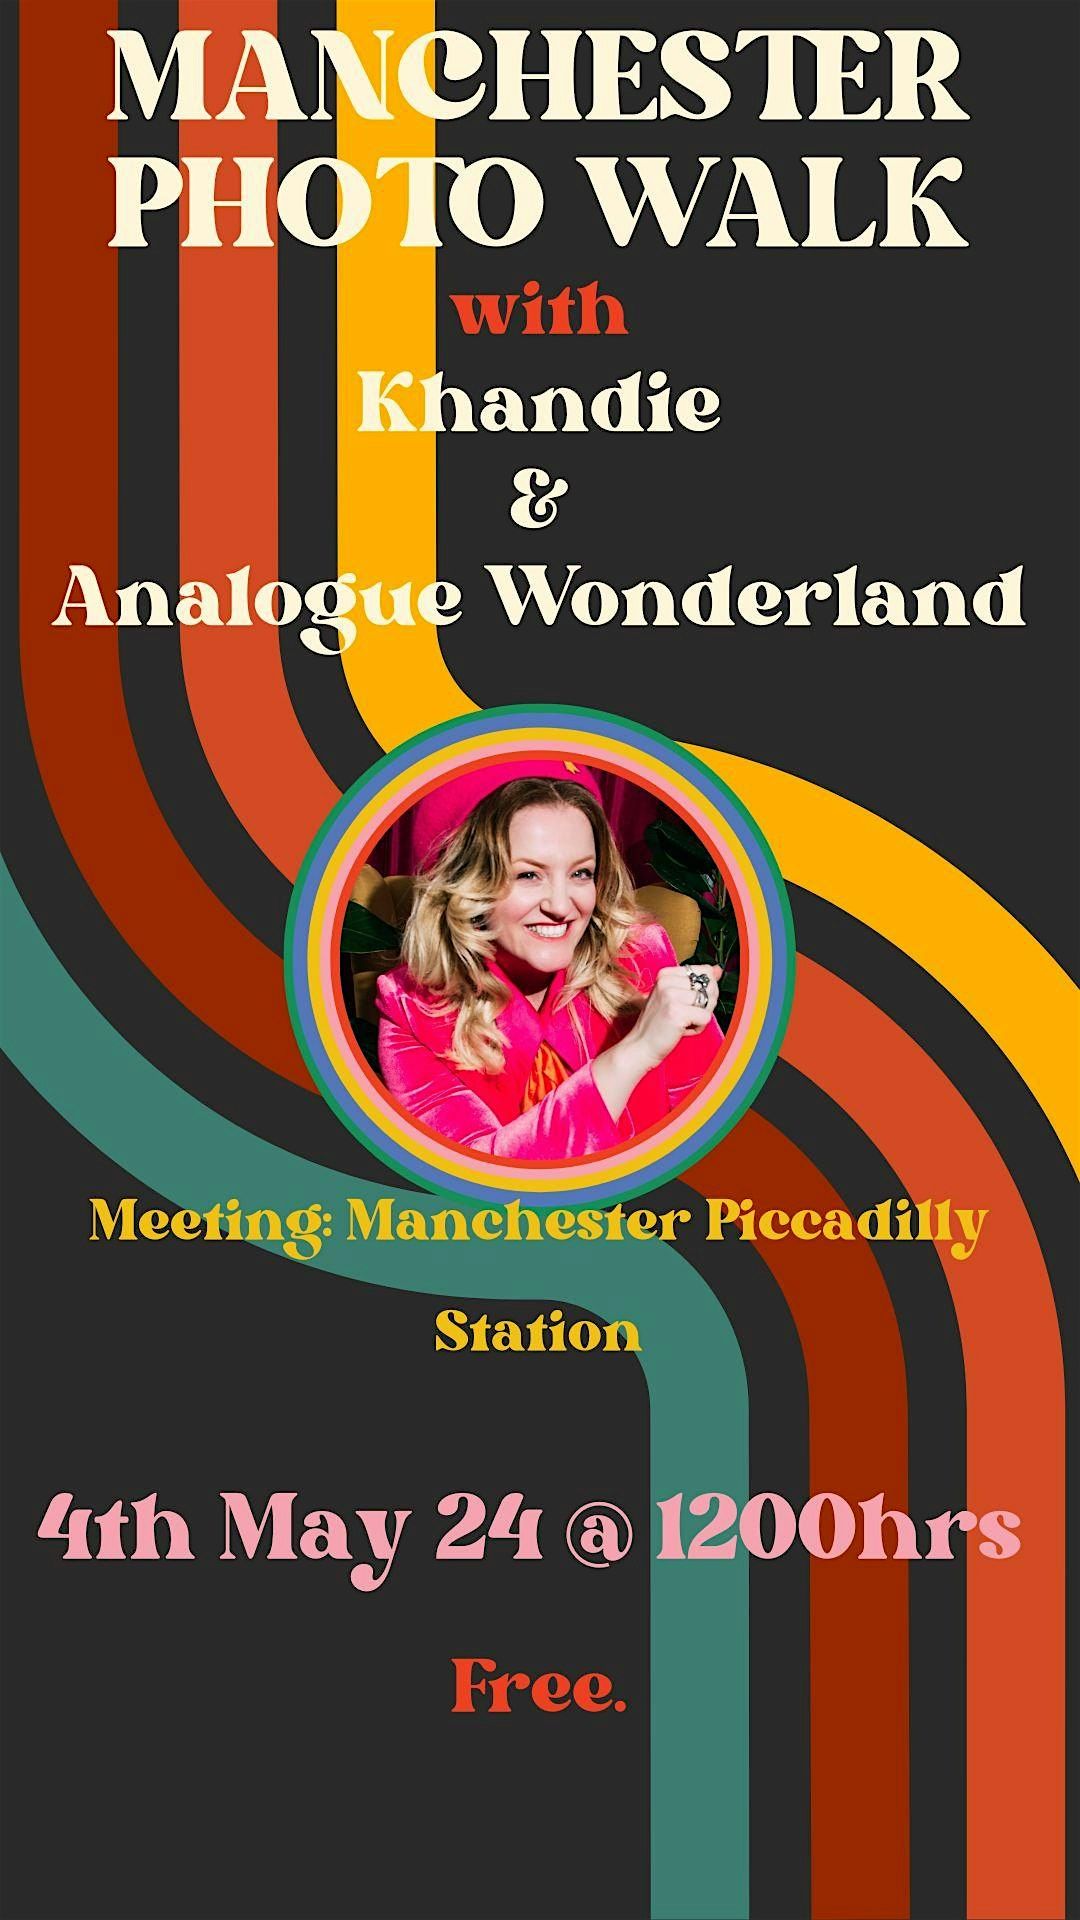 Analogue Wonderland Photo Walk in Manchester with Khandie